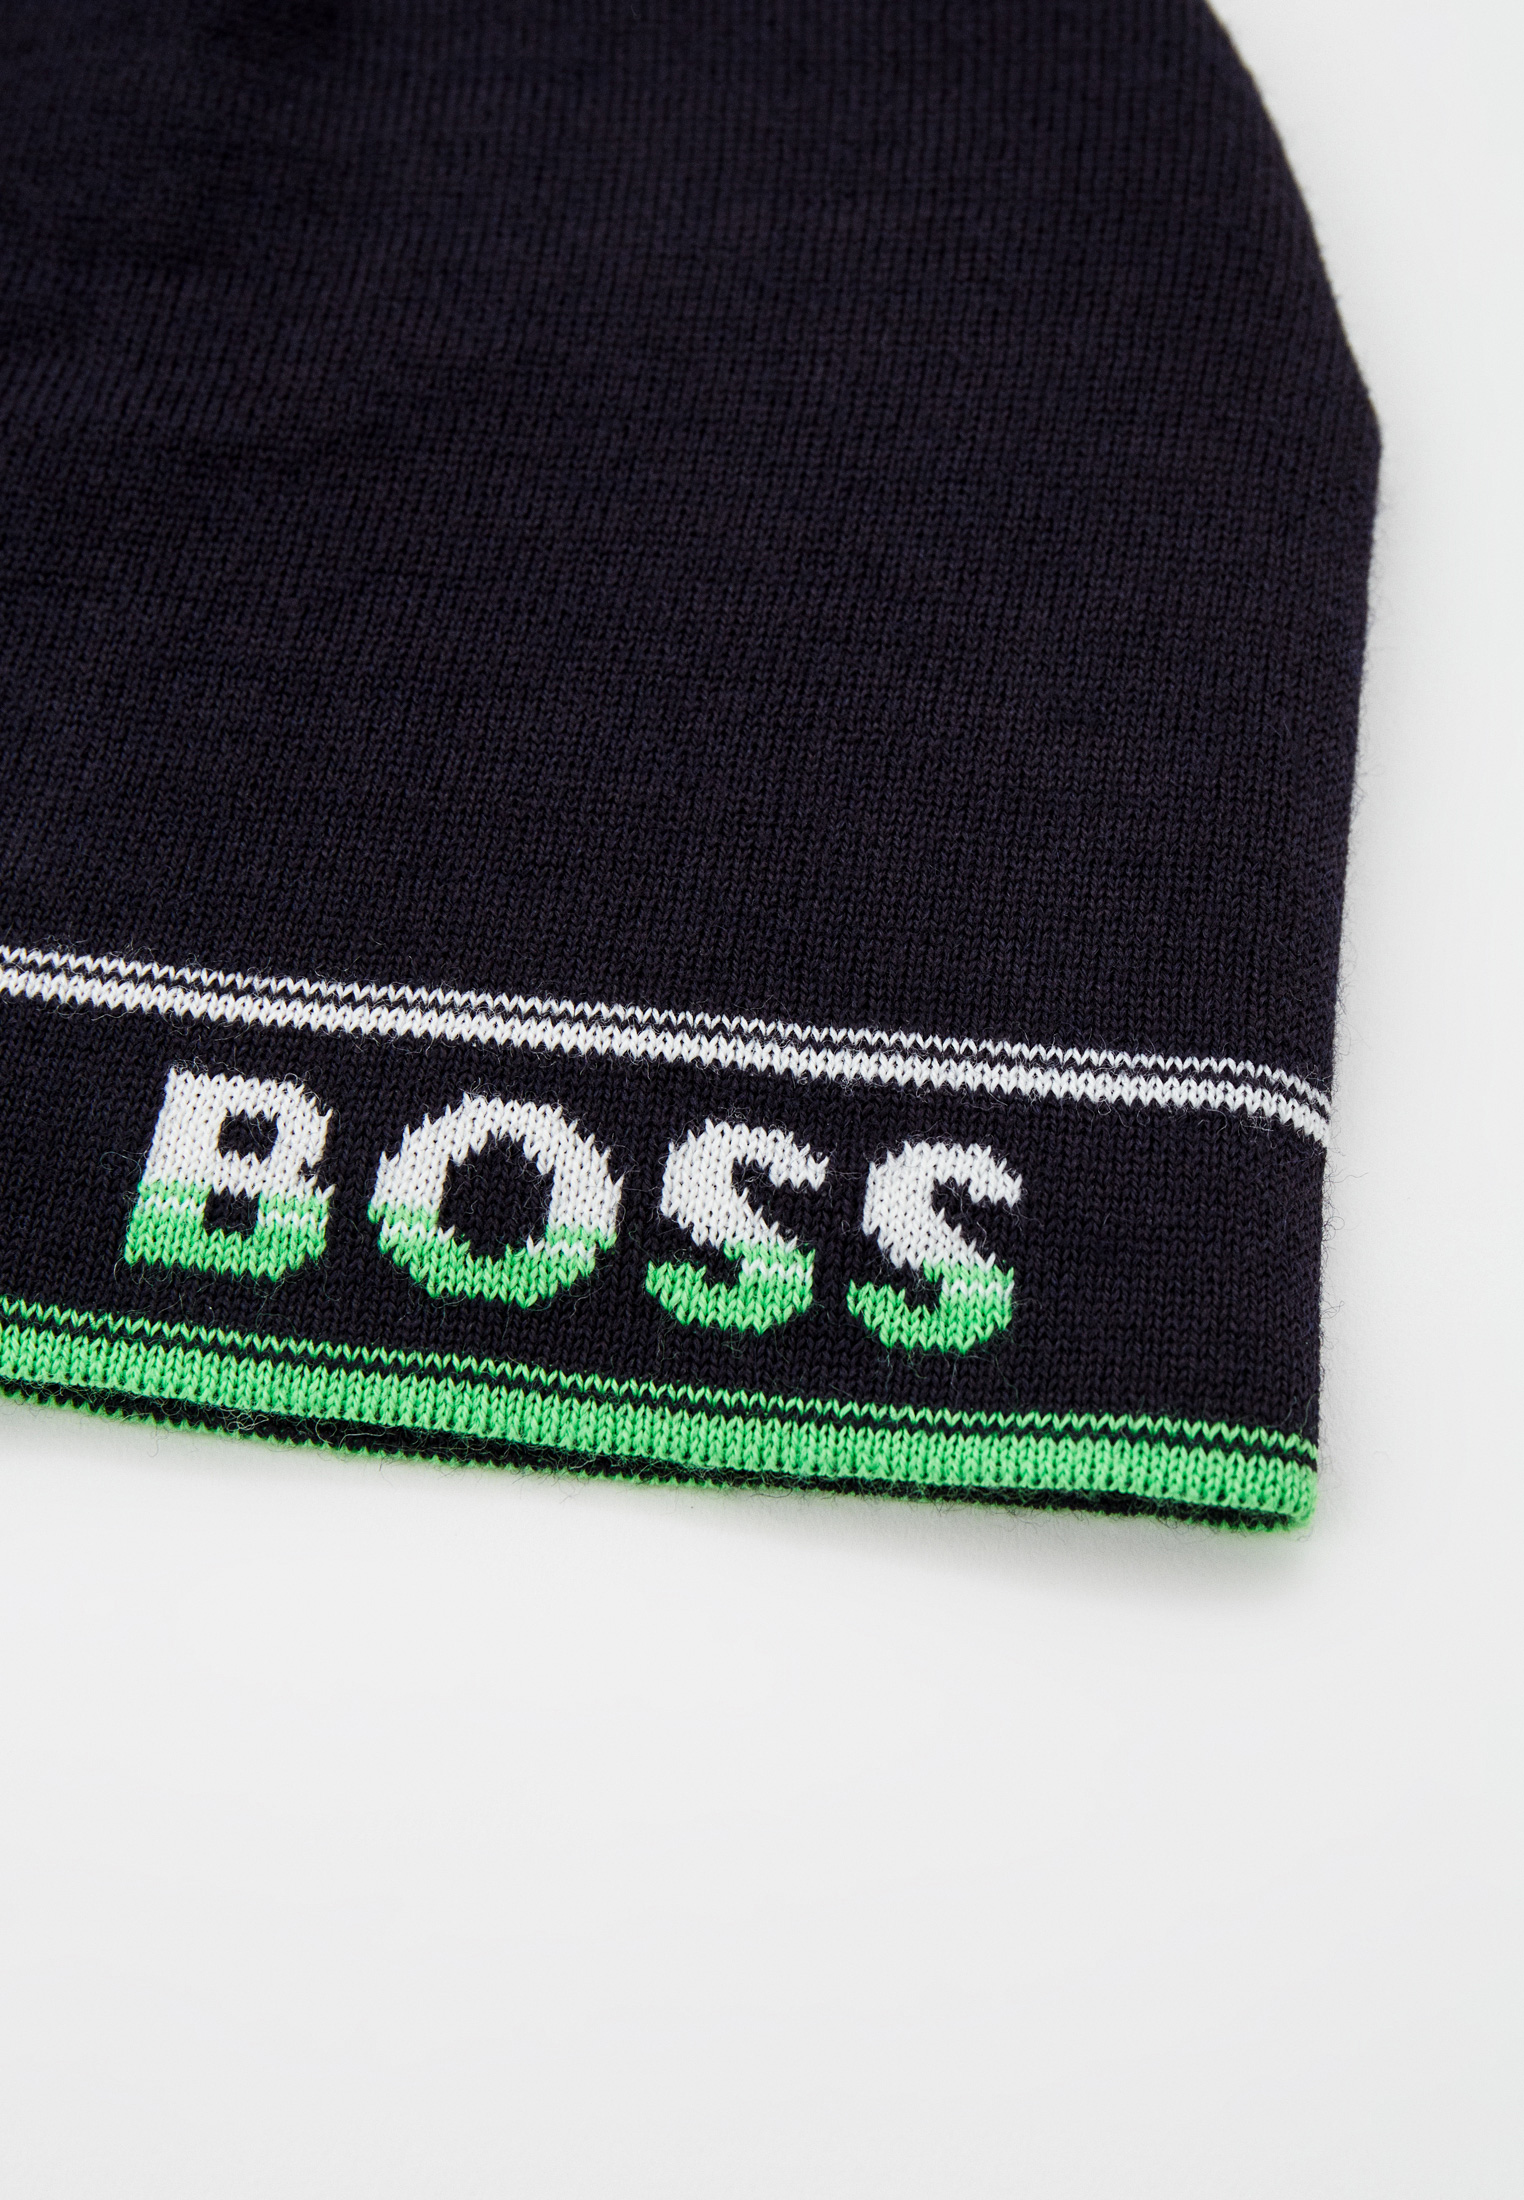 Шапка Boss (Босс) 50475517: изображение 5